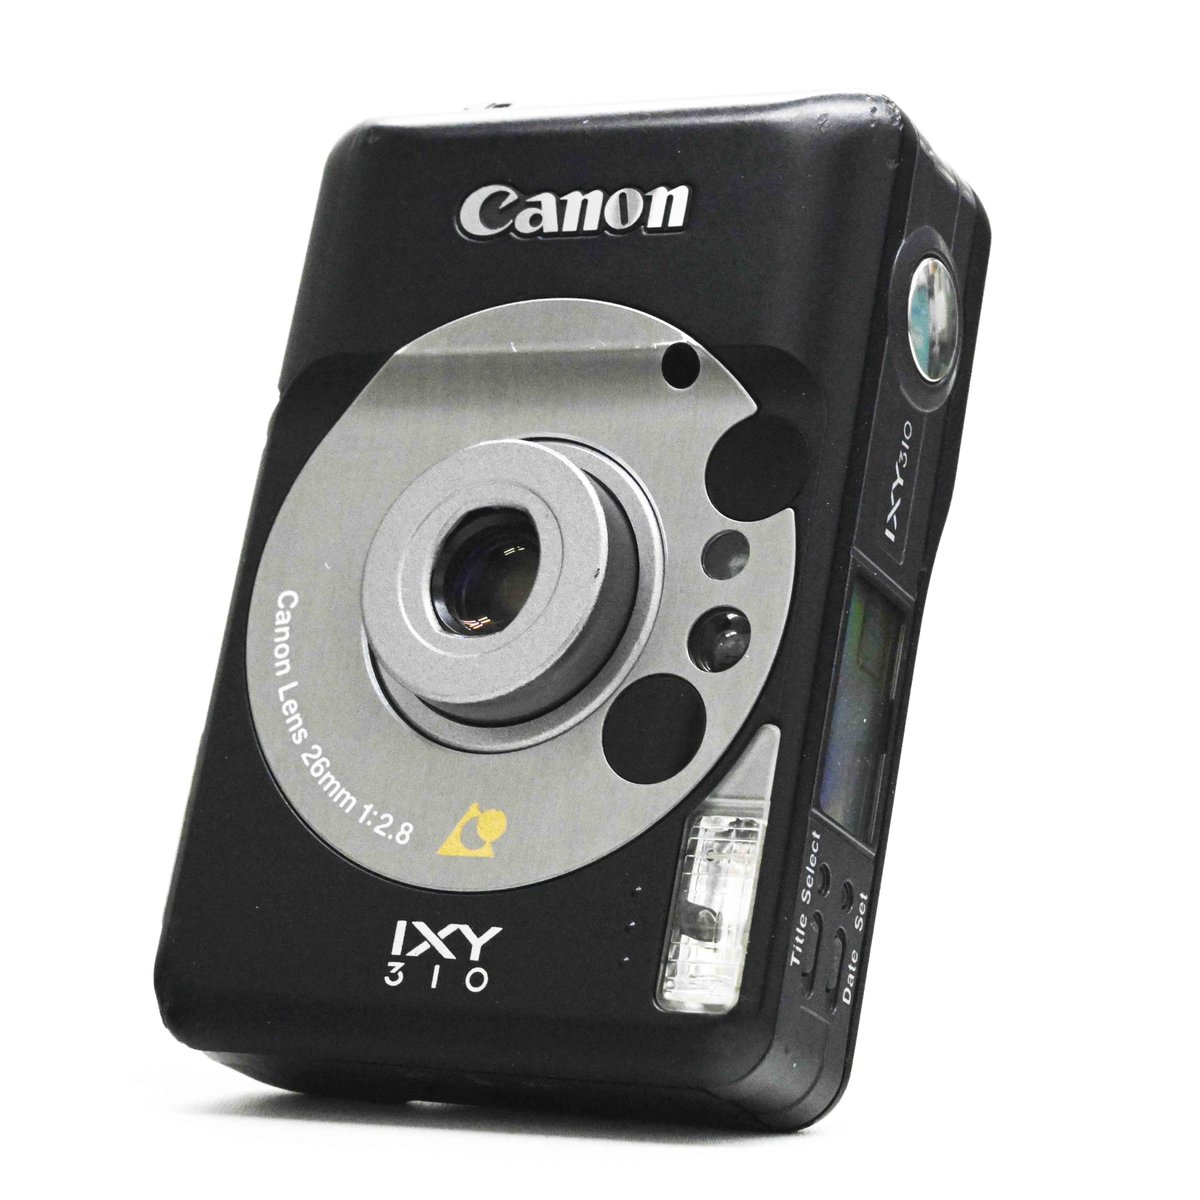 チャンプカメラ A Twitter Canon Ixy310 Aps 1 500 By 港北ニュータウン 店 カードサイズのとても小さい Apsフィルムカメラ です 明るい単焦点レンズを搭載しています 日付は28年まで入ります 弊店にて期限切れ Apsフィルム 販売しています 現像や